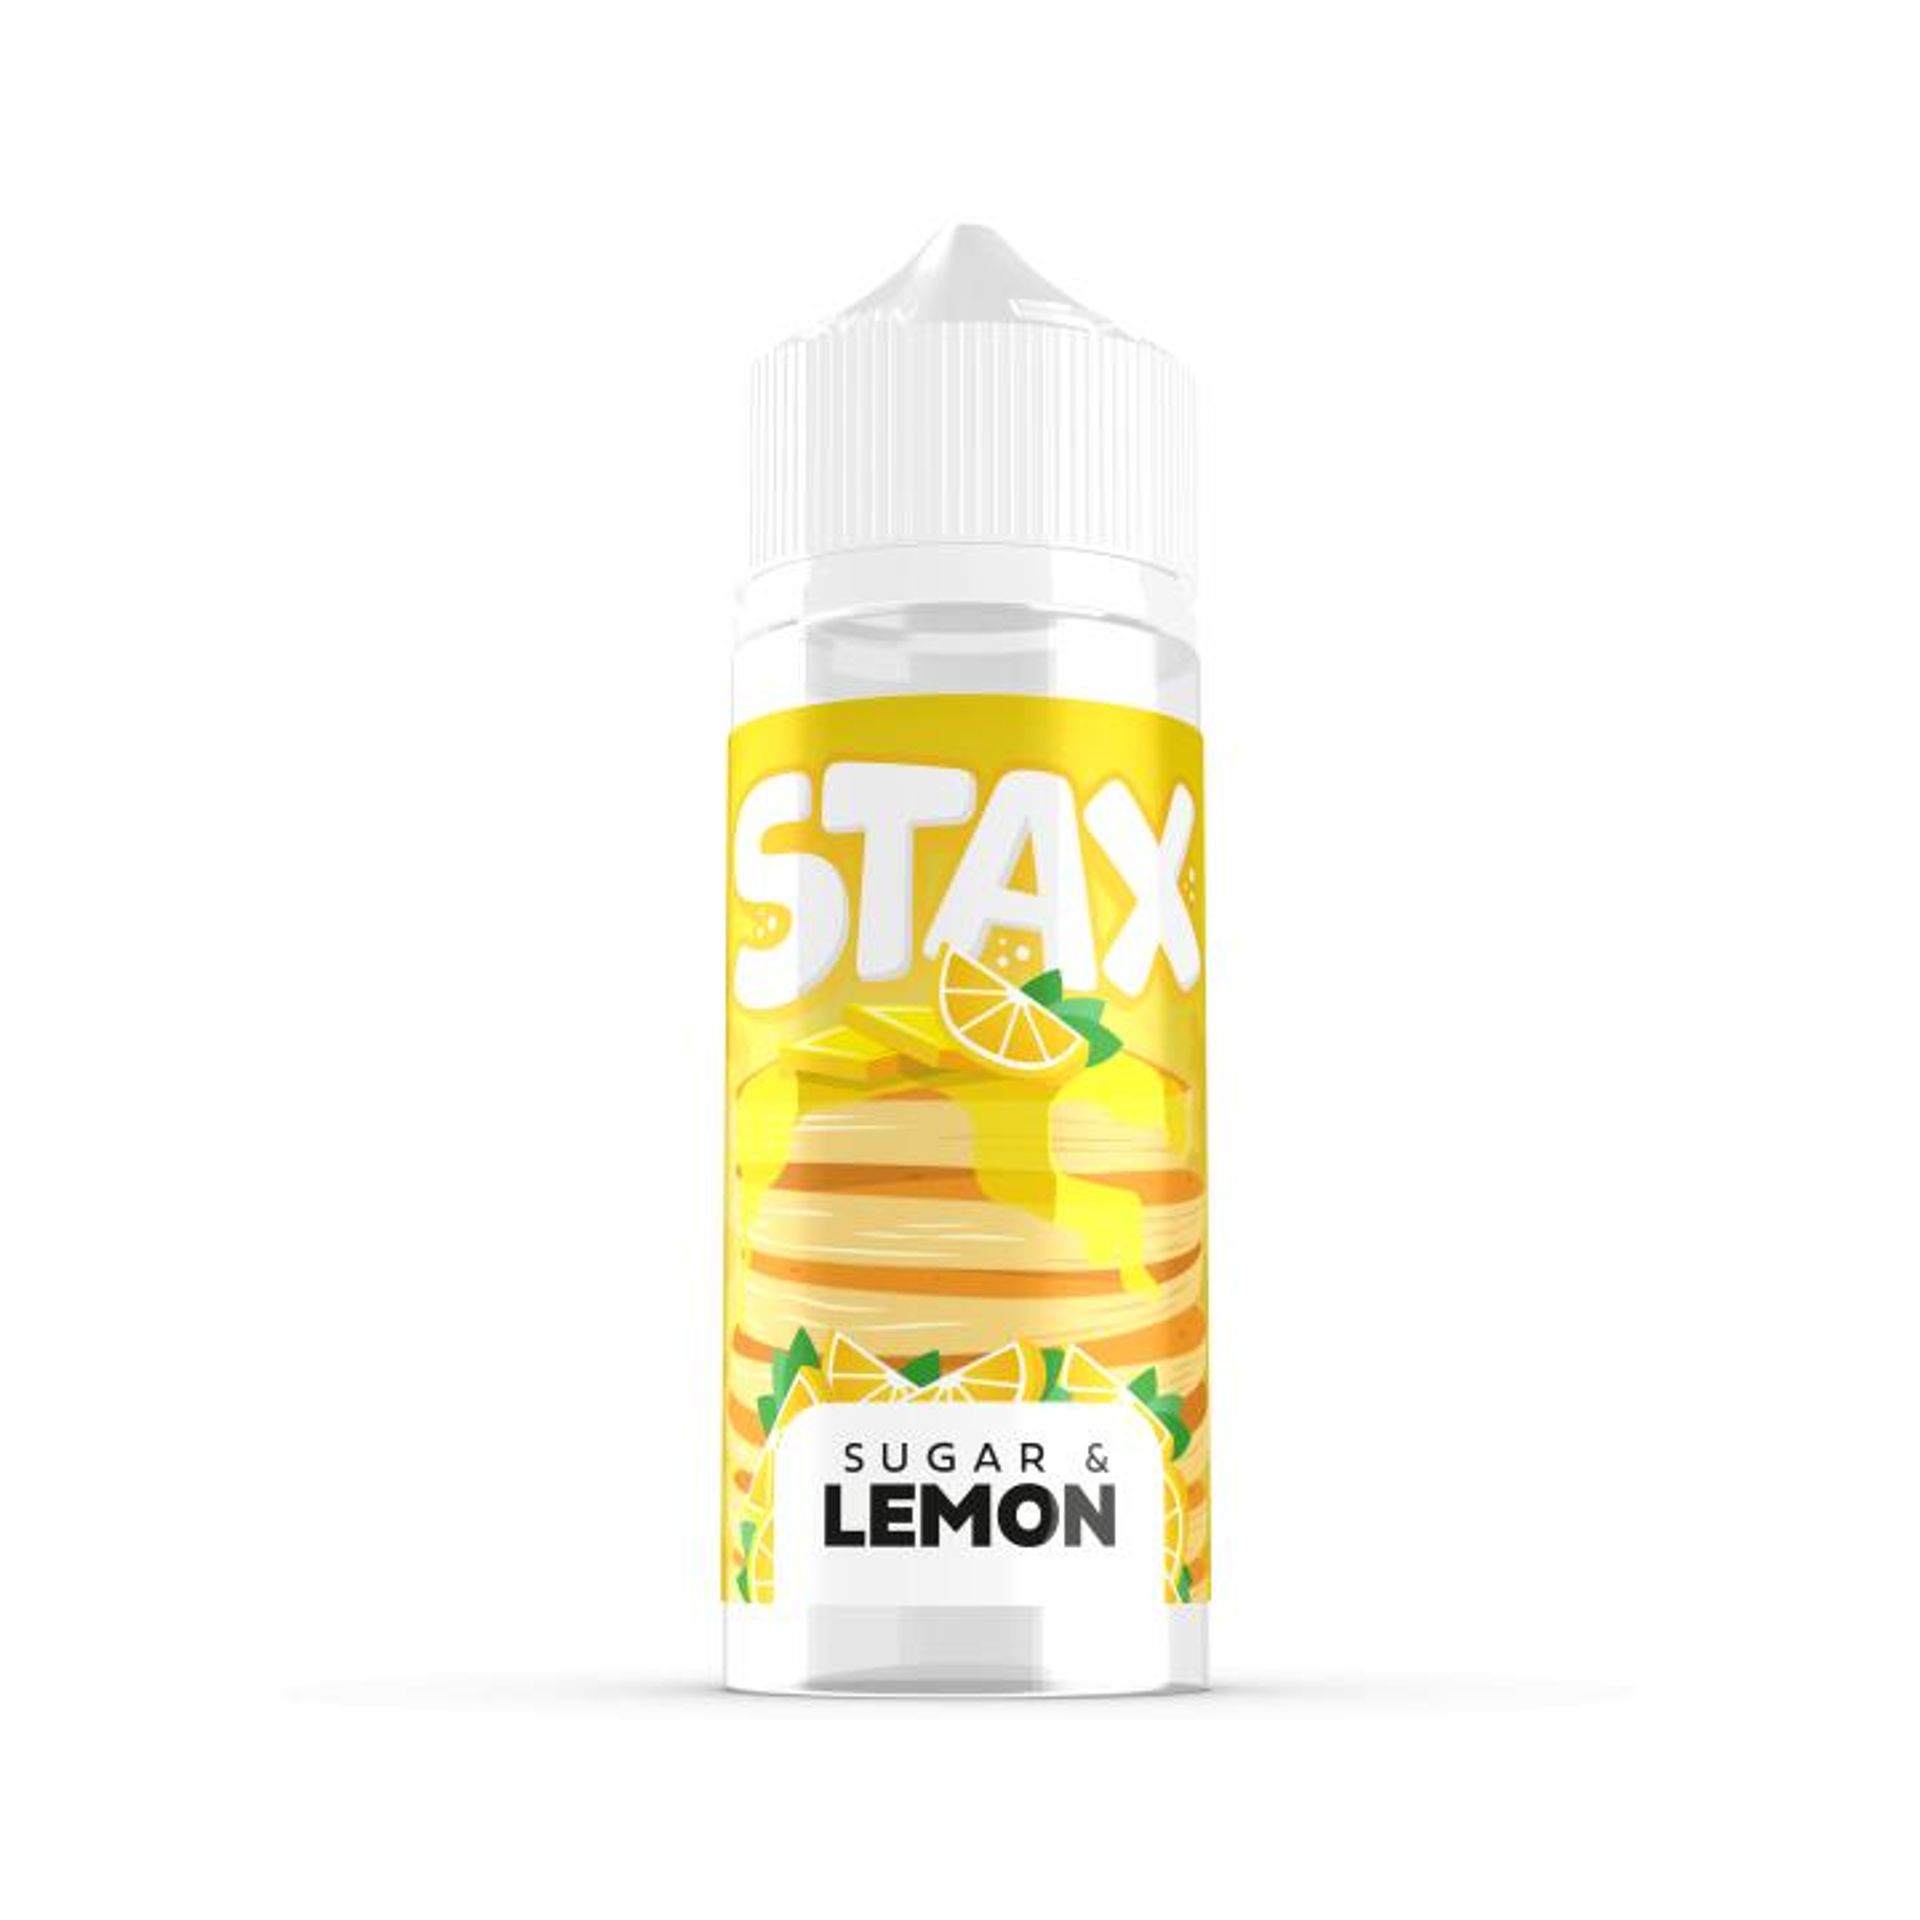 Image of Sugar & Lemon Pancakes by Stax